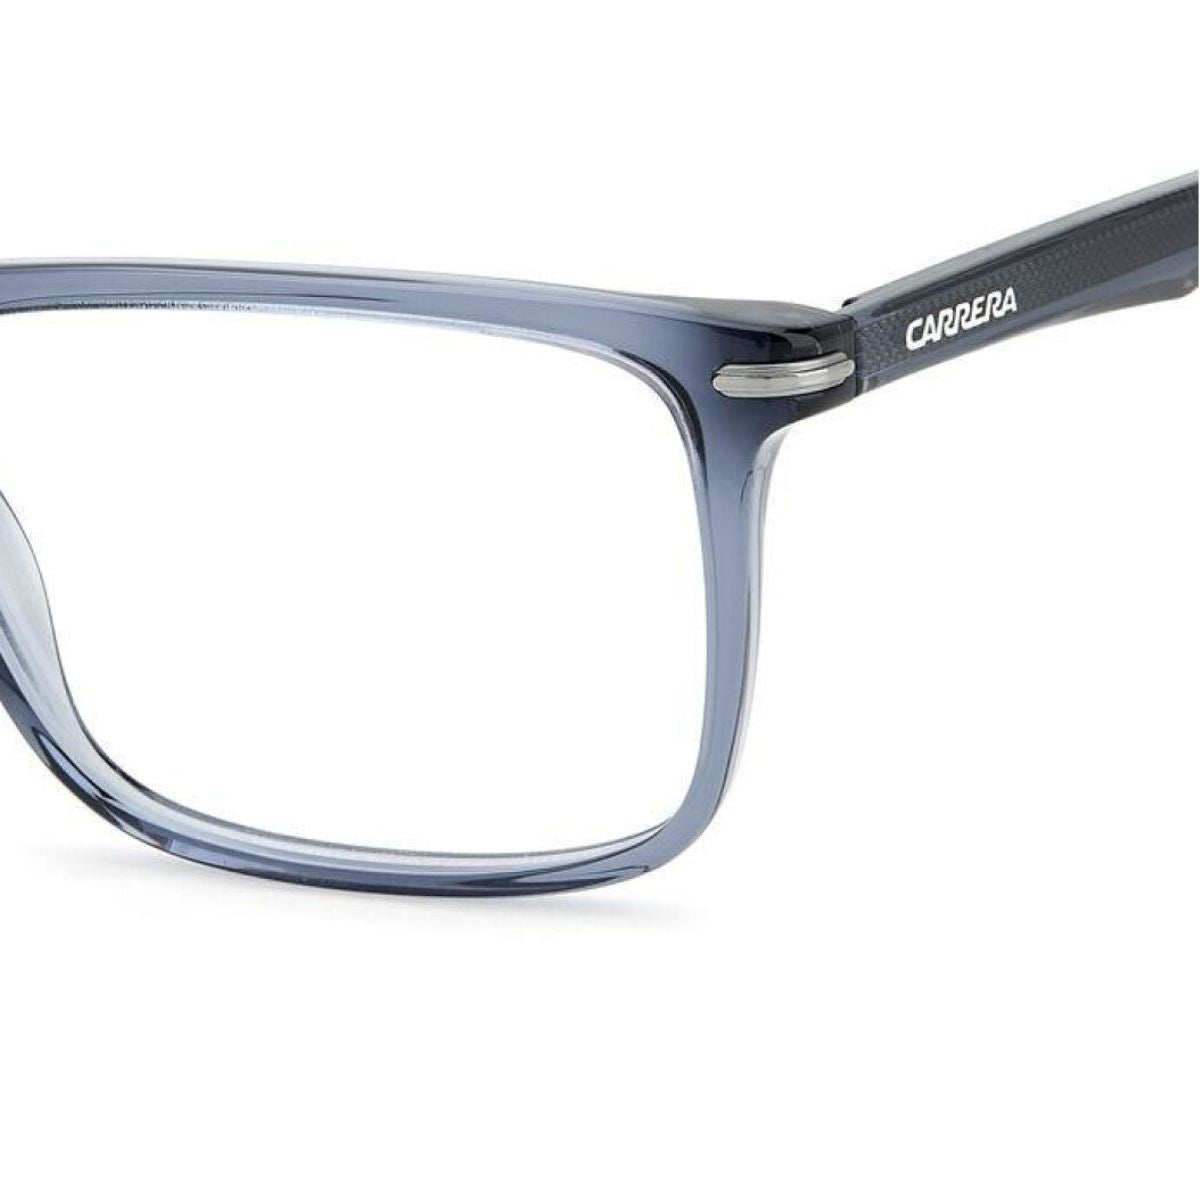 "Carrera 286 PJP eyesight & eye glasses frame for men's online at optorium"